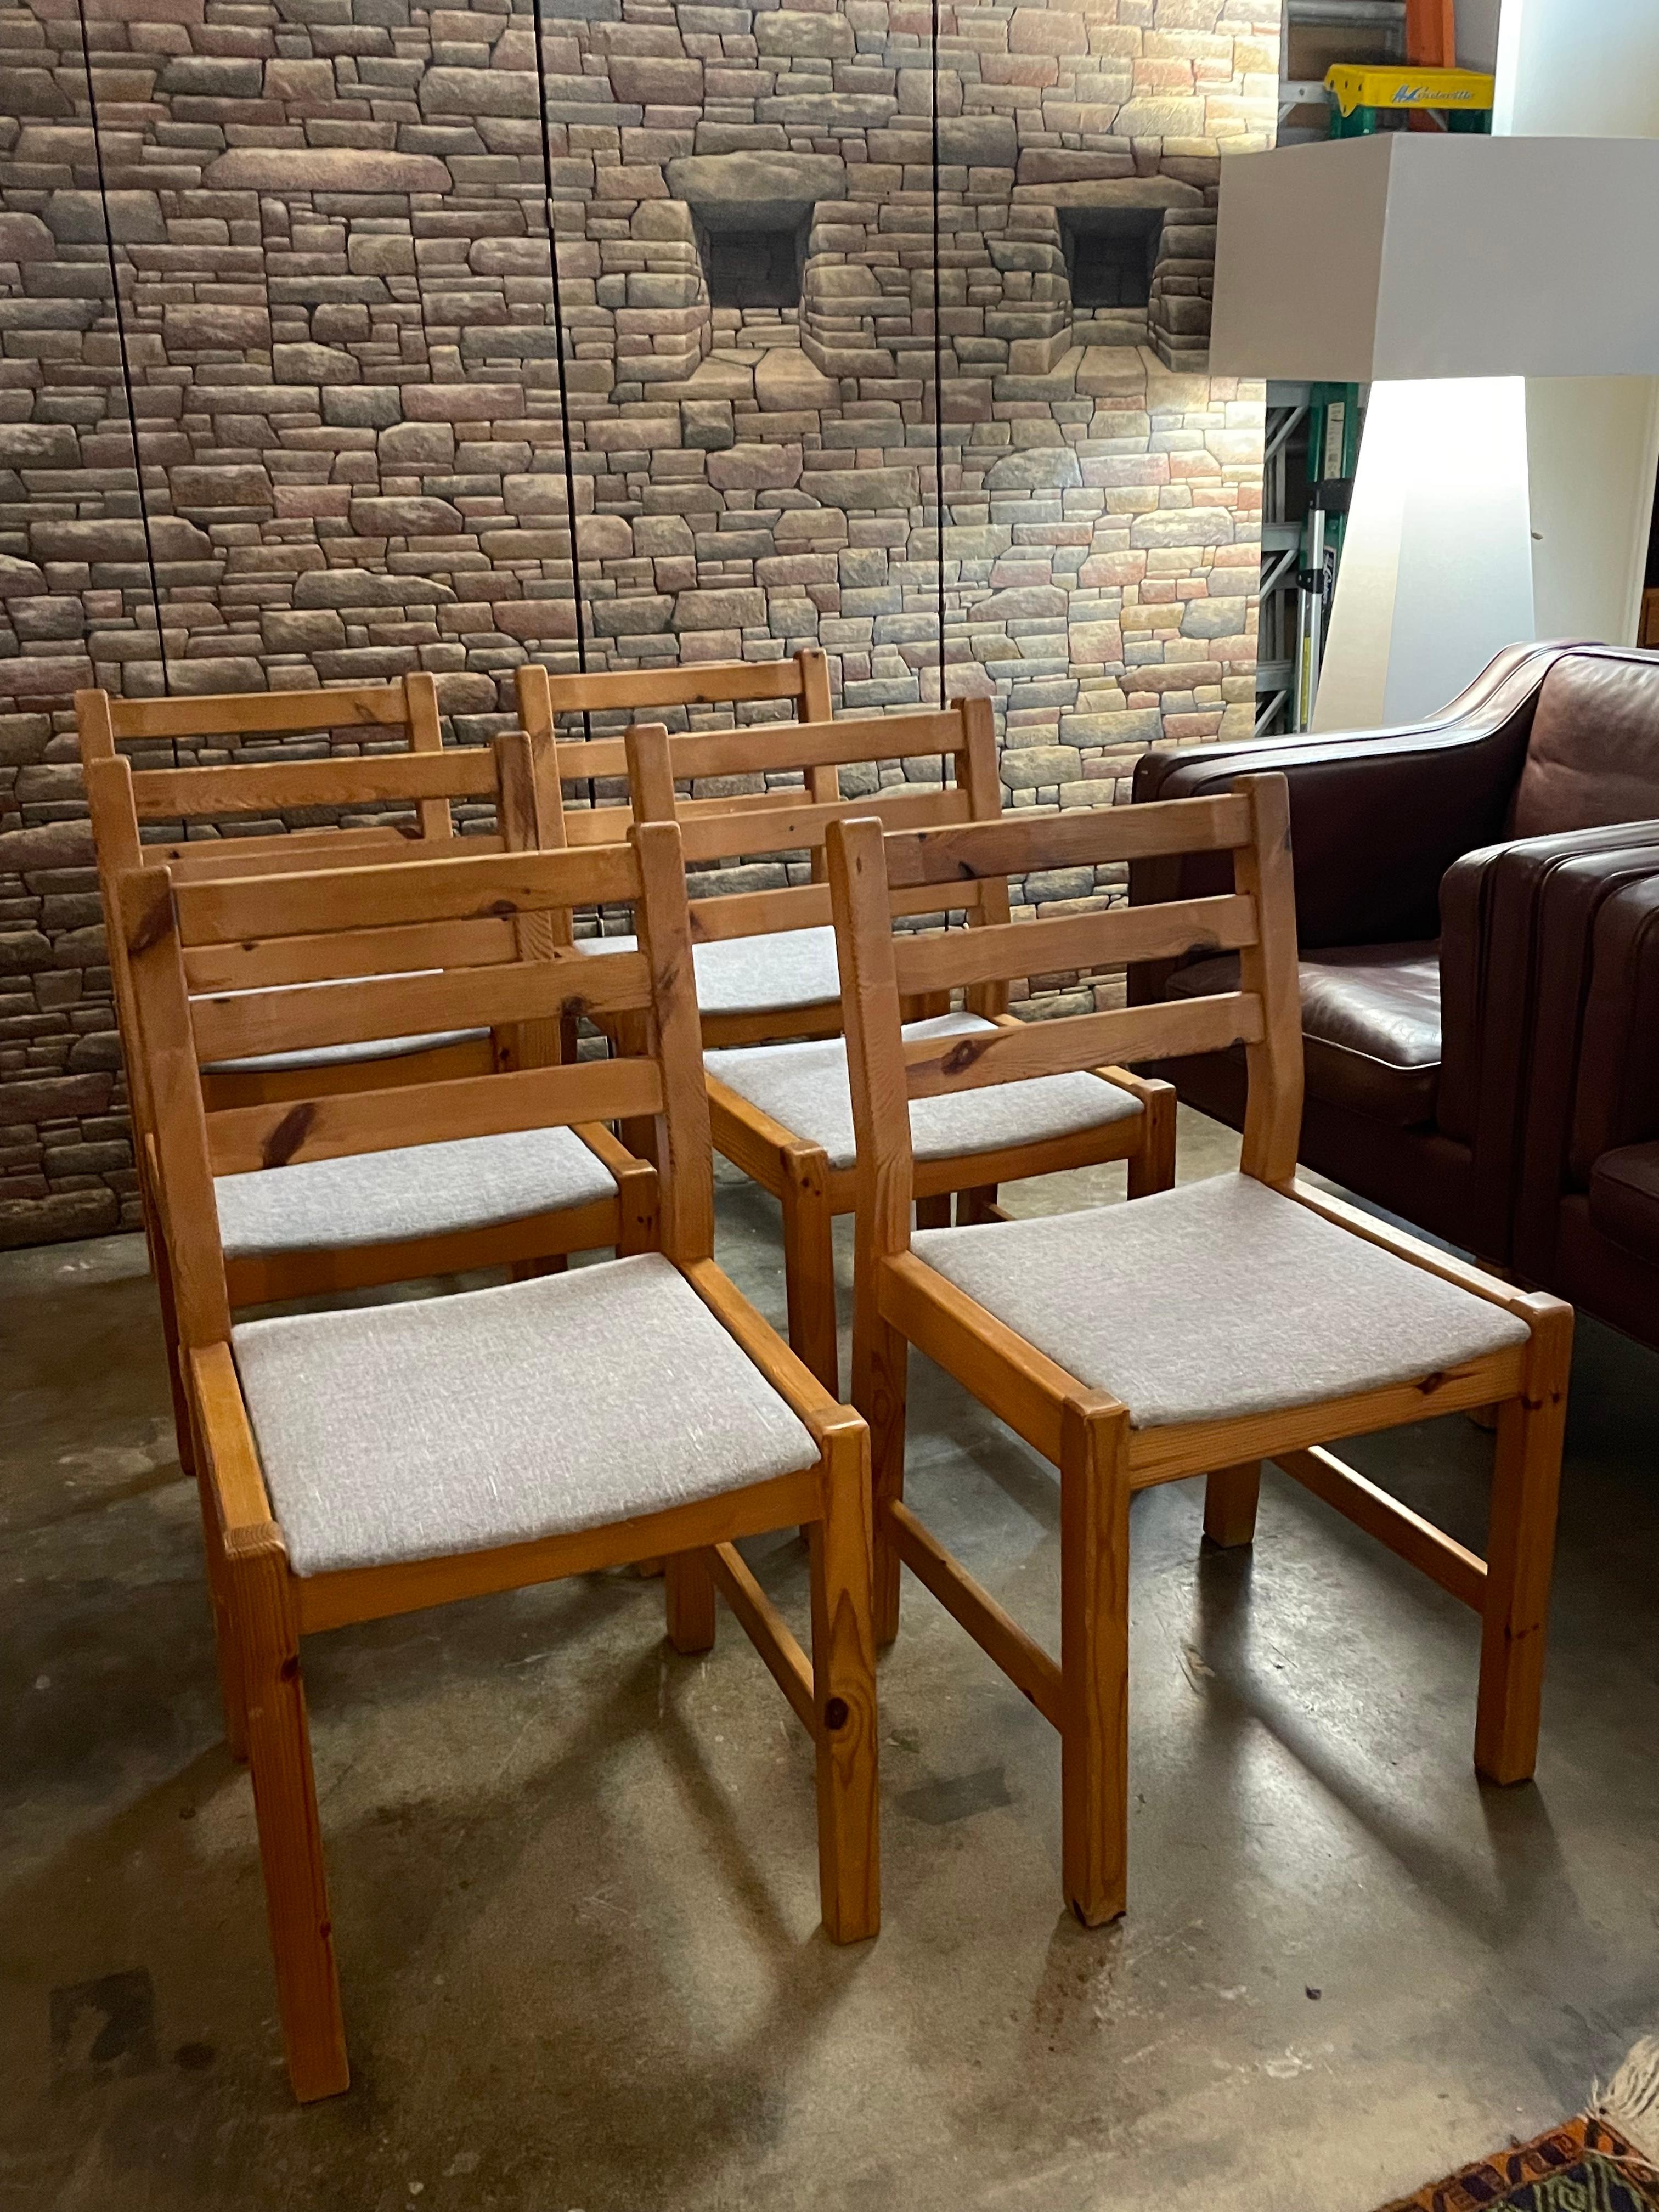 Ensemble de 6 chaises de salle à manger en pin danois, vers les années 1970, avec assise recouverte de tissu gris (la photo montre la couleur exacte). 

Dimensions : 18.75 